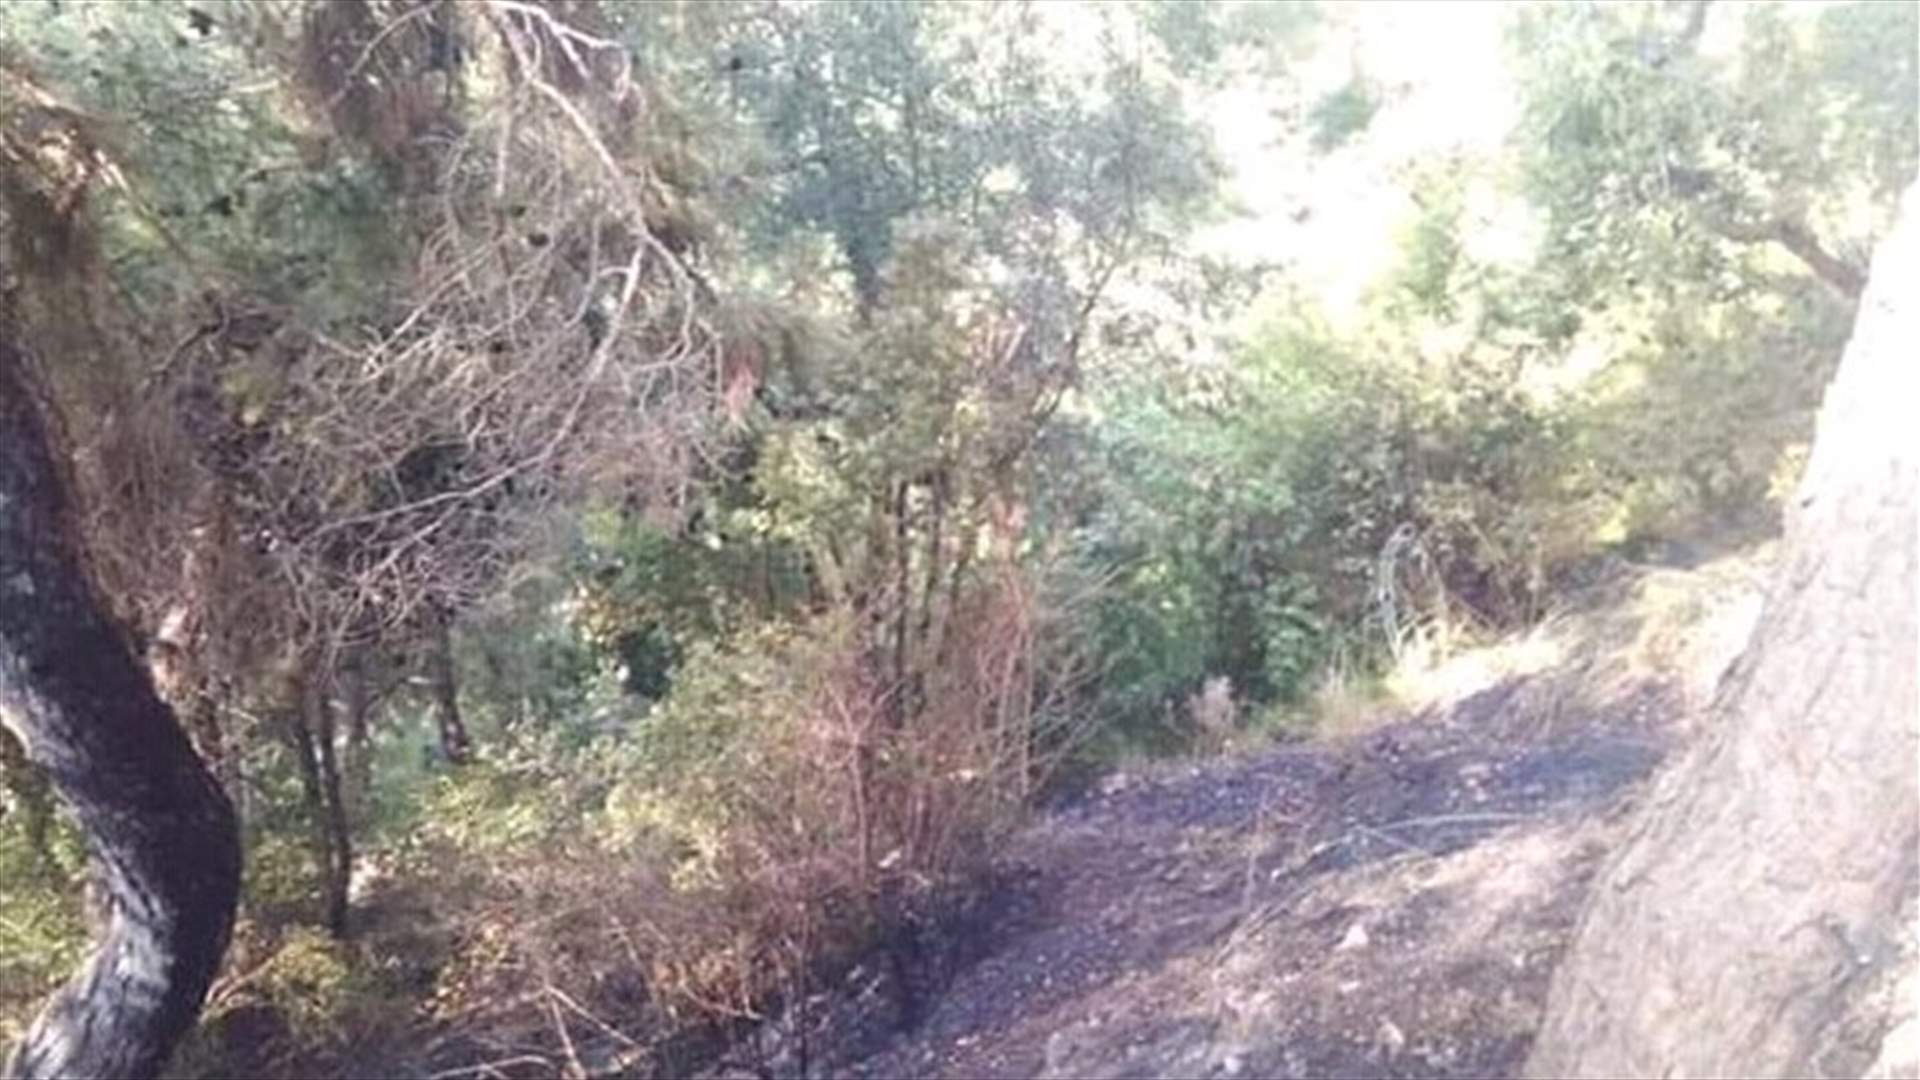 إخماد حريق في حرج صنوبر في عندقت (صورة)